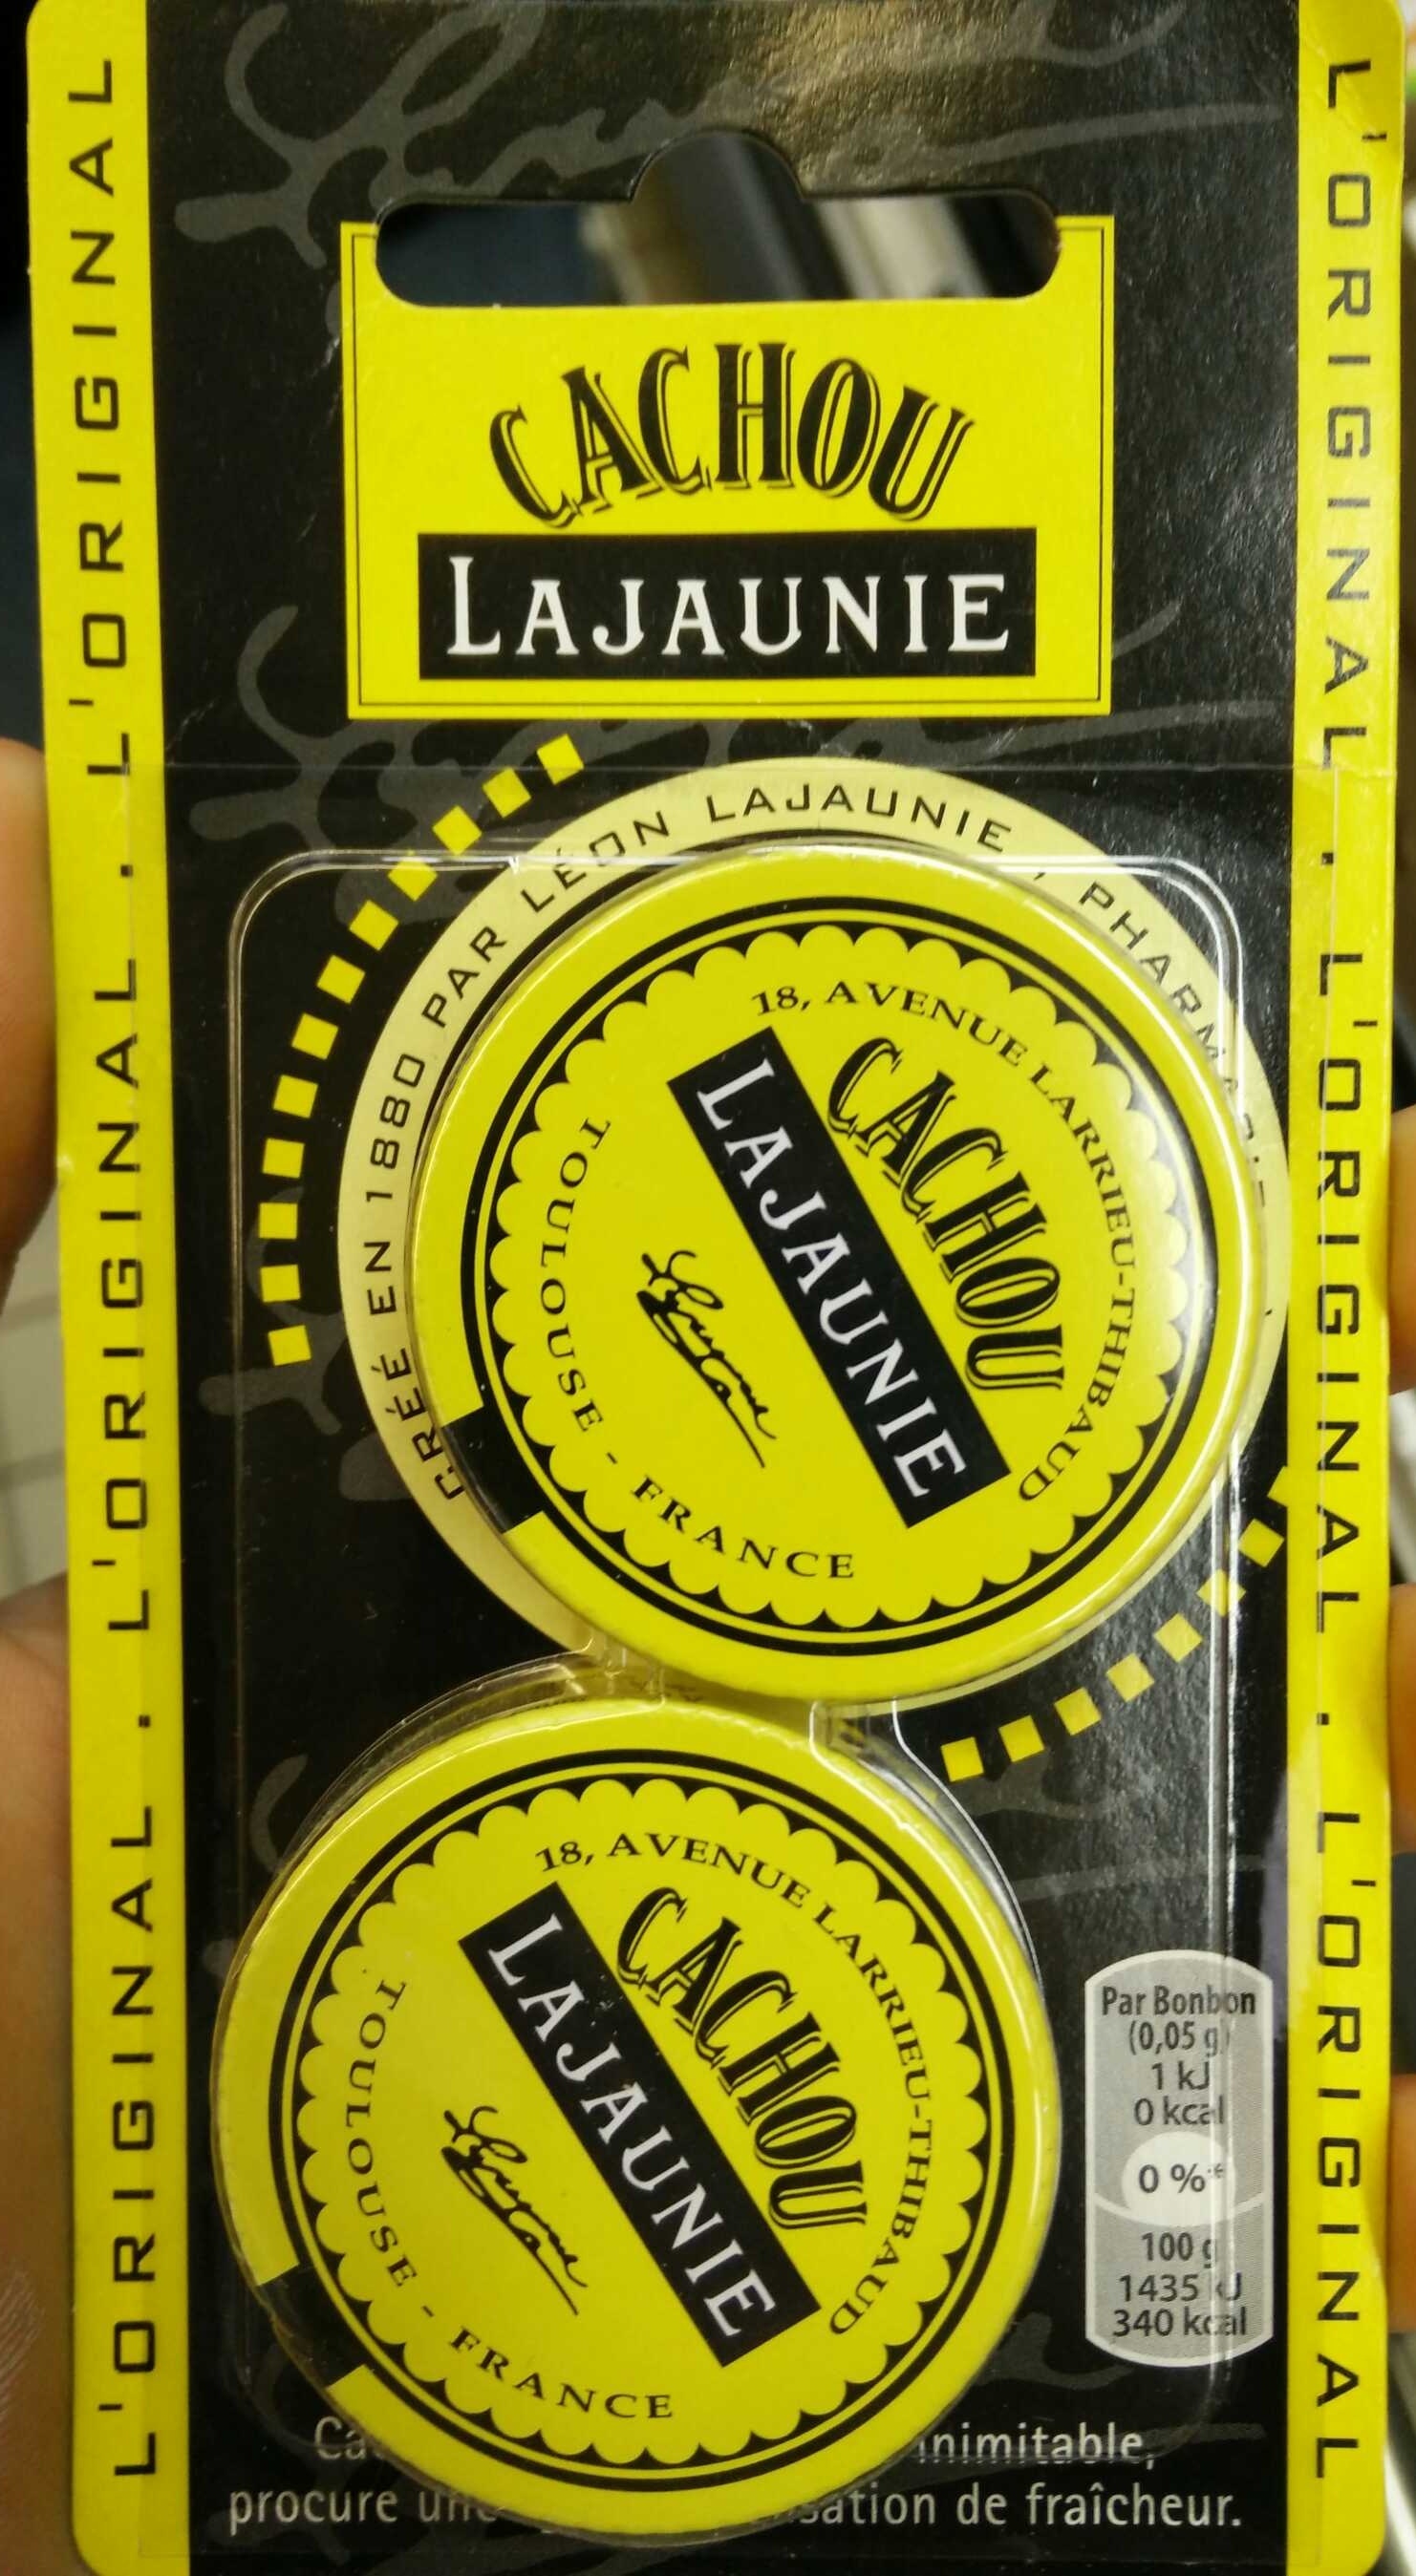 Cachou - Lajaunie - 2 boites x 6 g